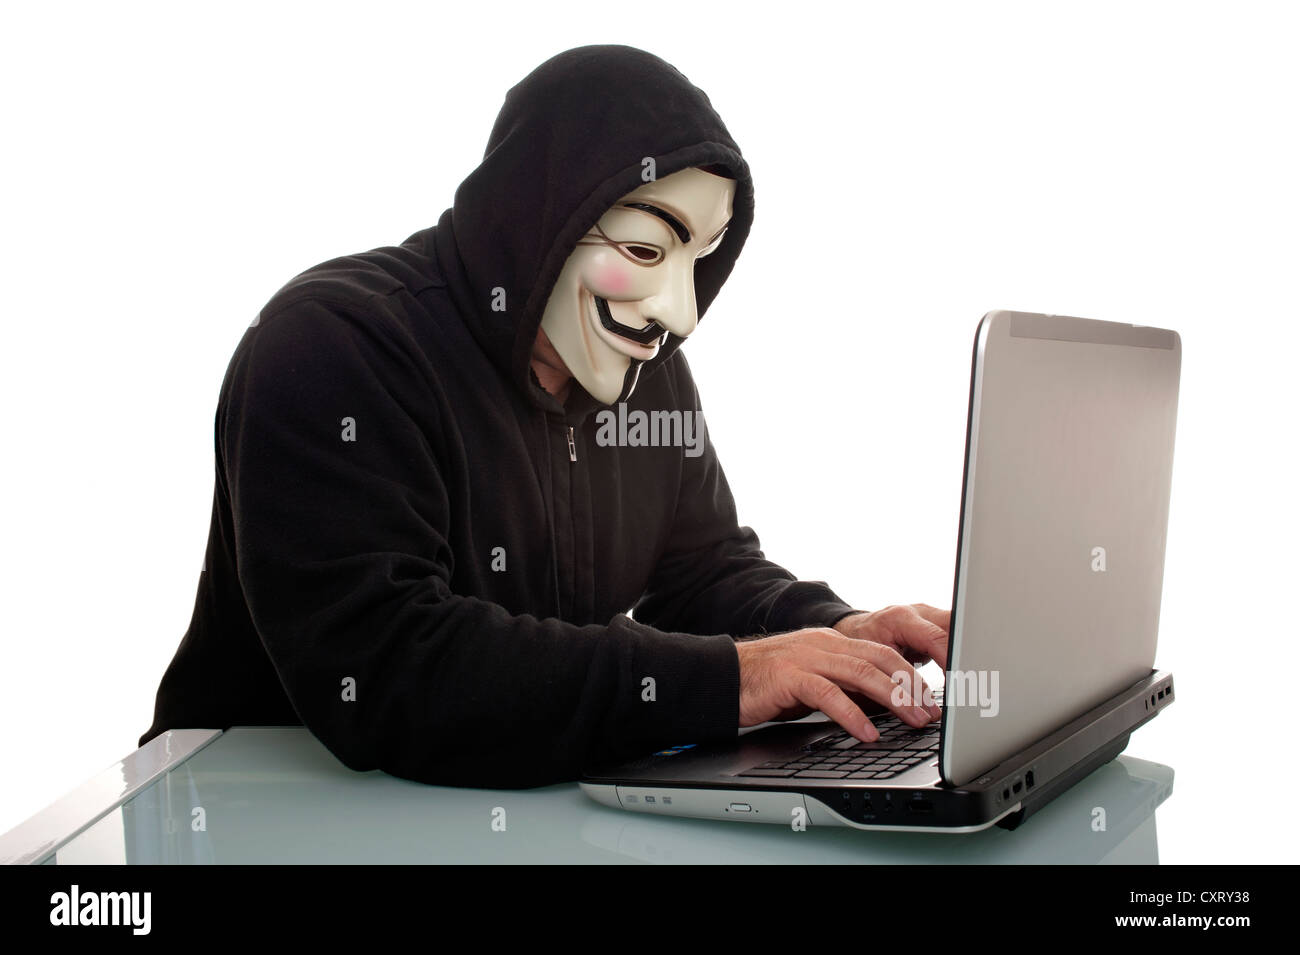 Un homme portant un "Anonyme", Guy Fawkes ou 'V pour Vendetta' masque, travailler sur un ordinateur portable Banque D'Images